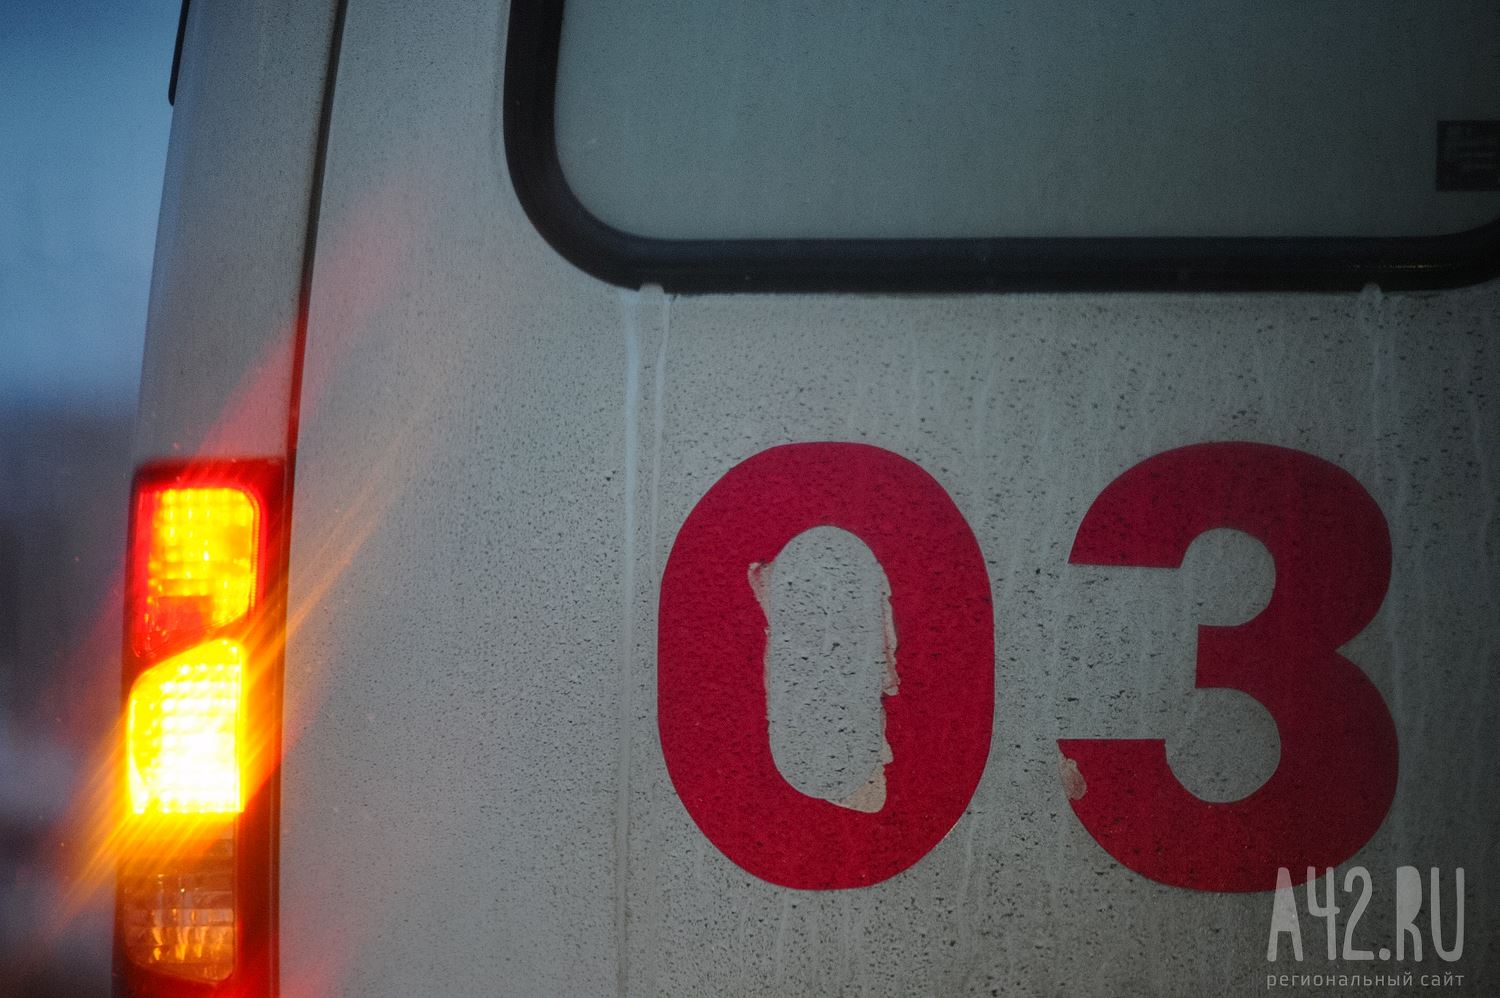 Присел отдохнуть: очевидцы сообщили, что такси раздавило пешехода в Кемерове